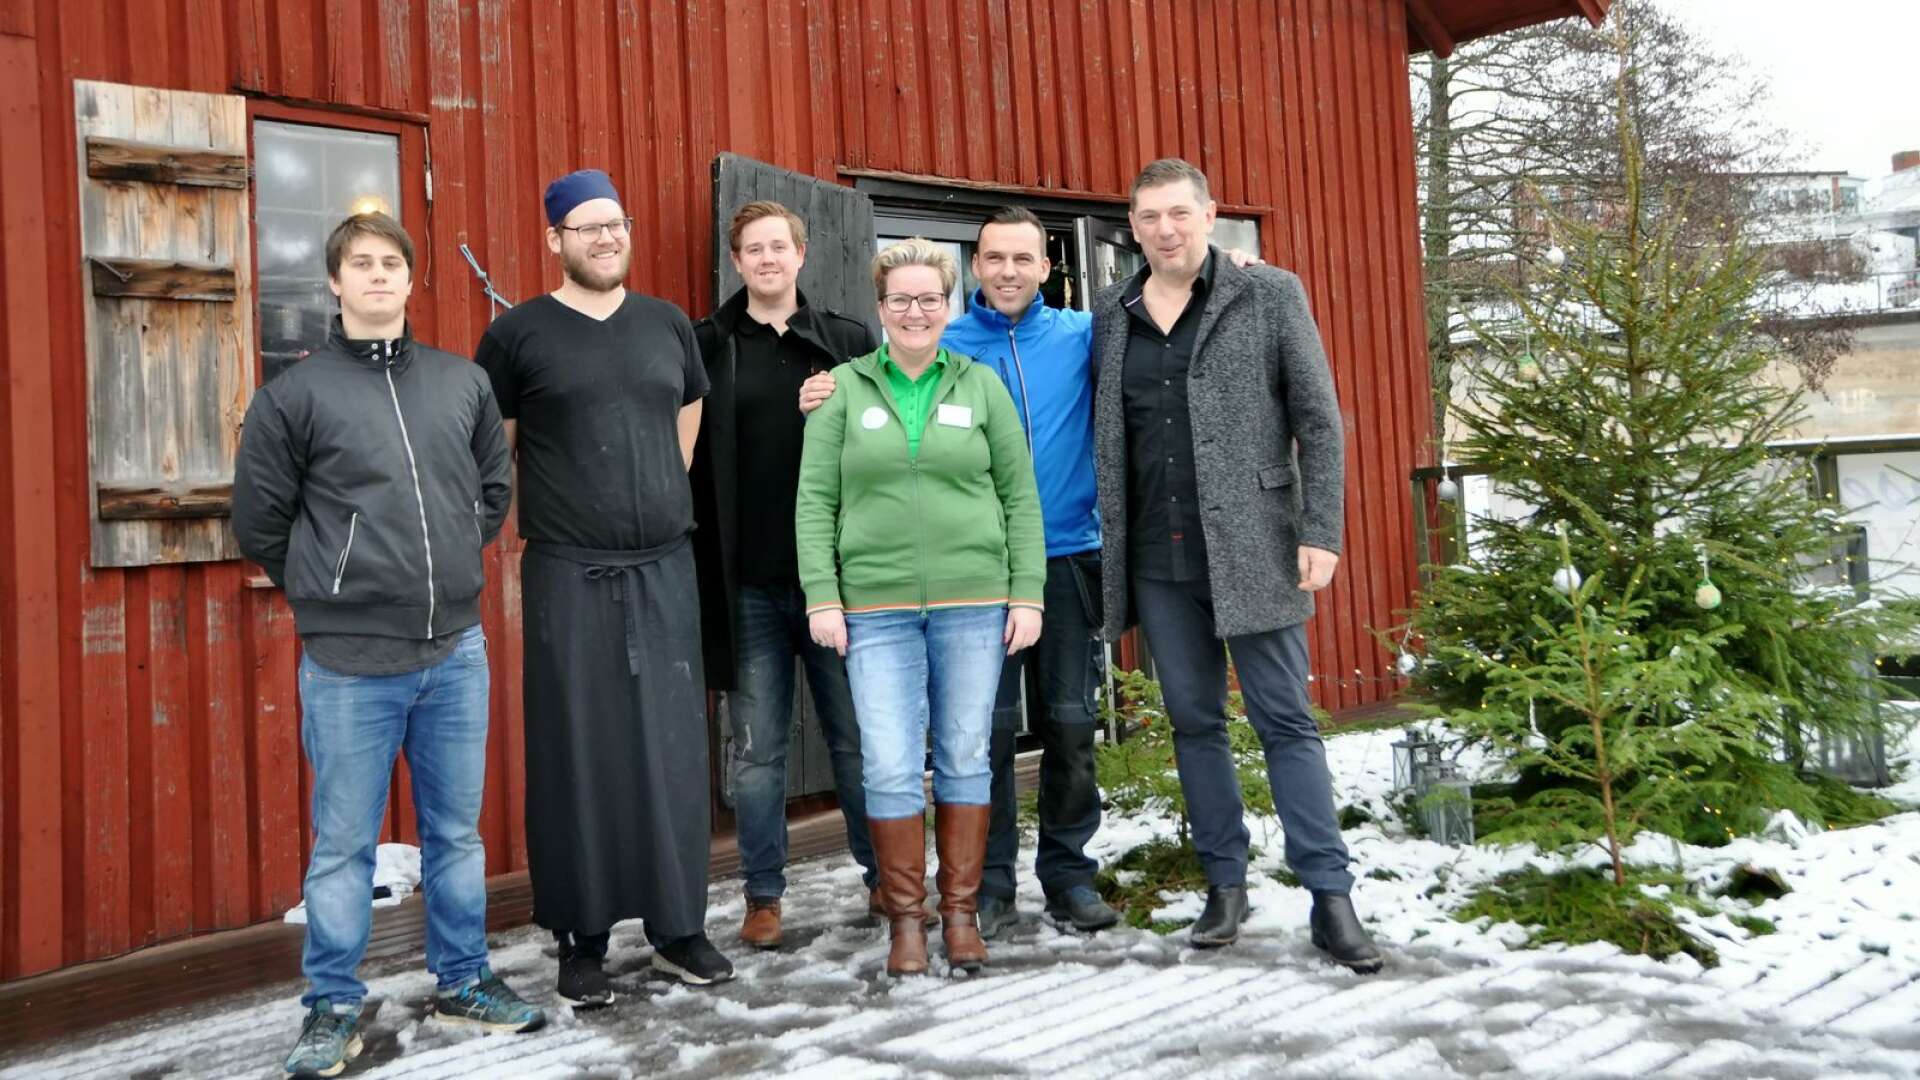 Från vänster syns Jacob Ericsson, Marcus Larsson, Christoffer Johansson, Cecilia Edvardsson, Besnik Dautaj och Marinko Aleksic utanför Rosellmagasinet.